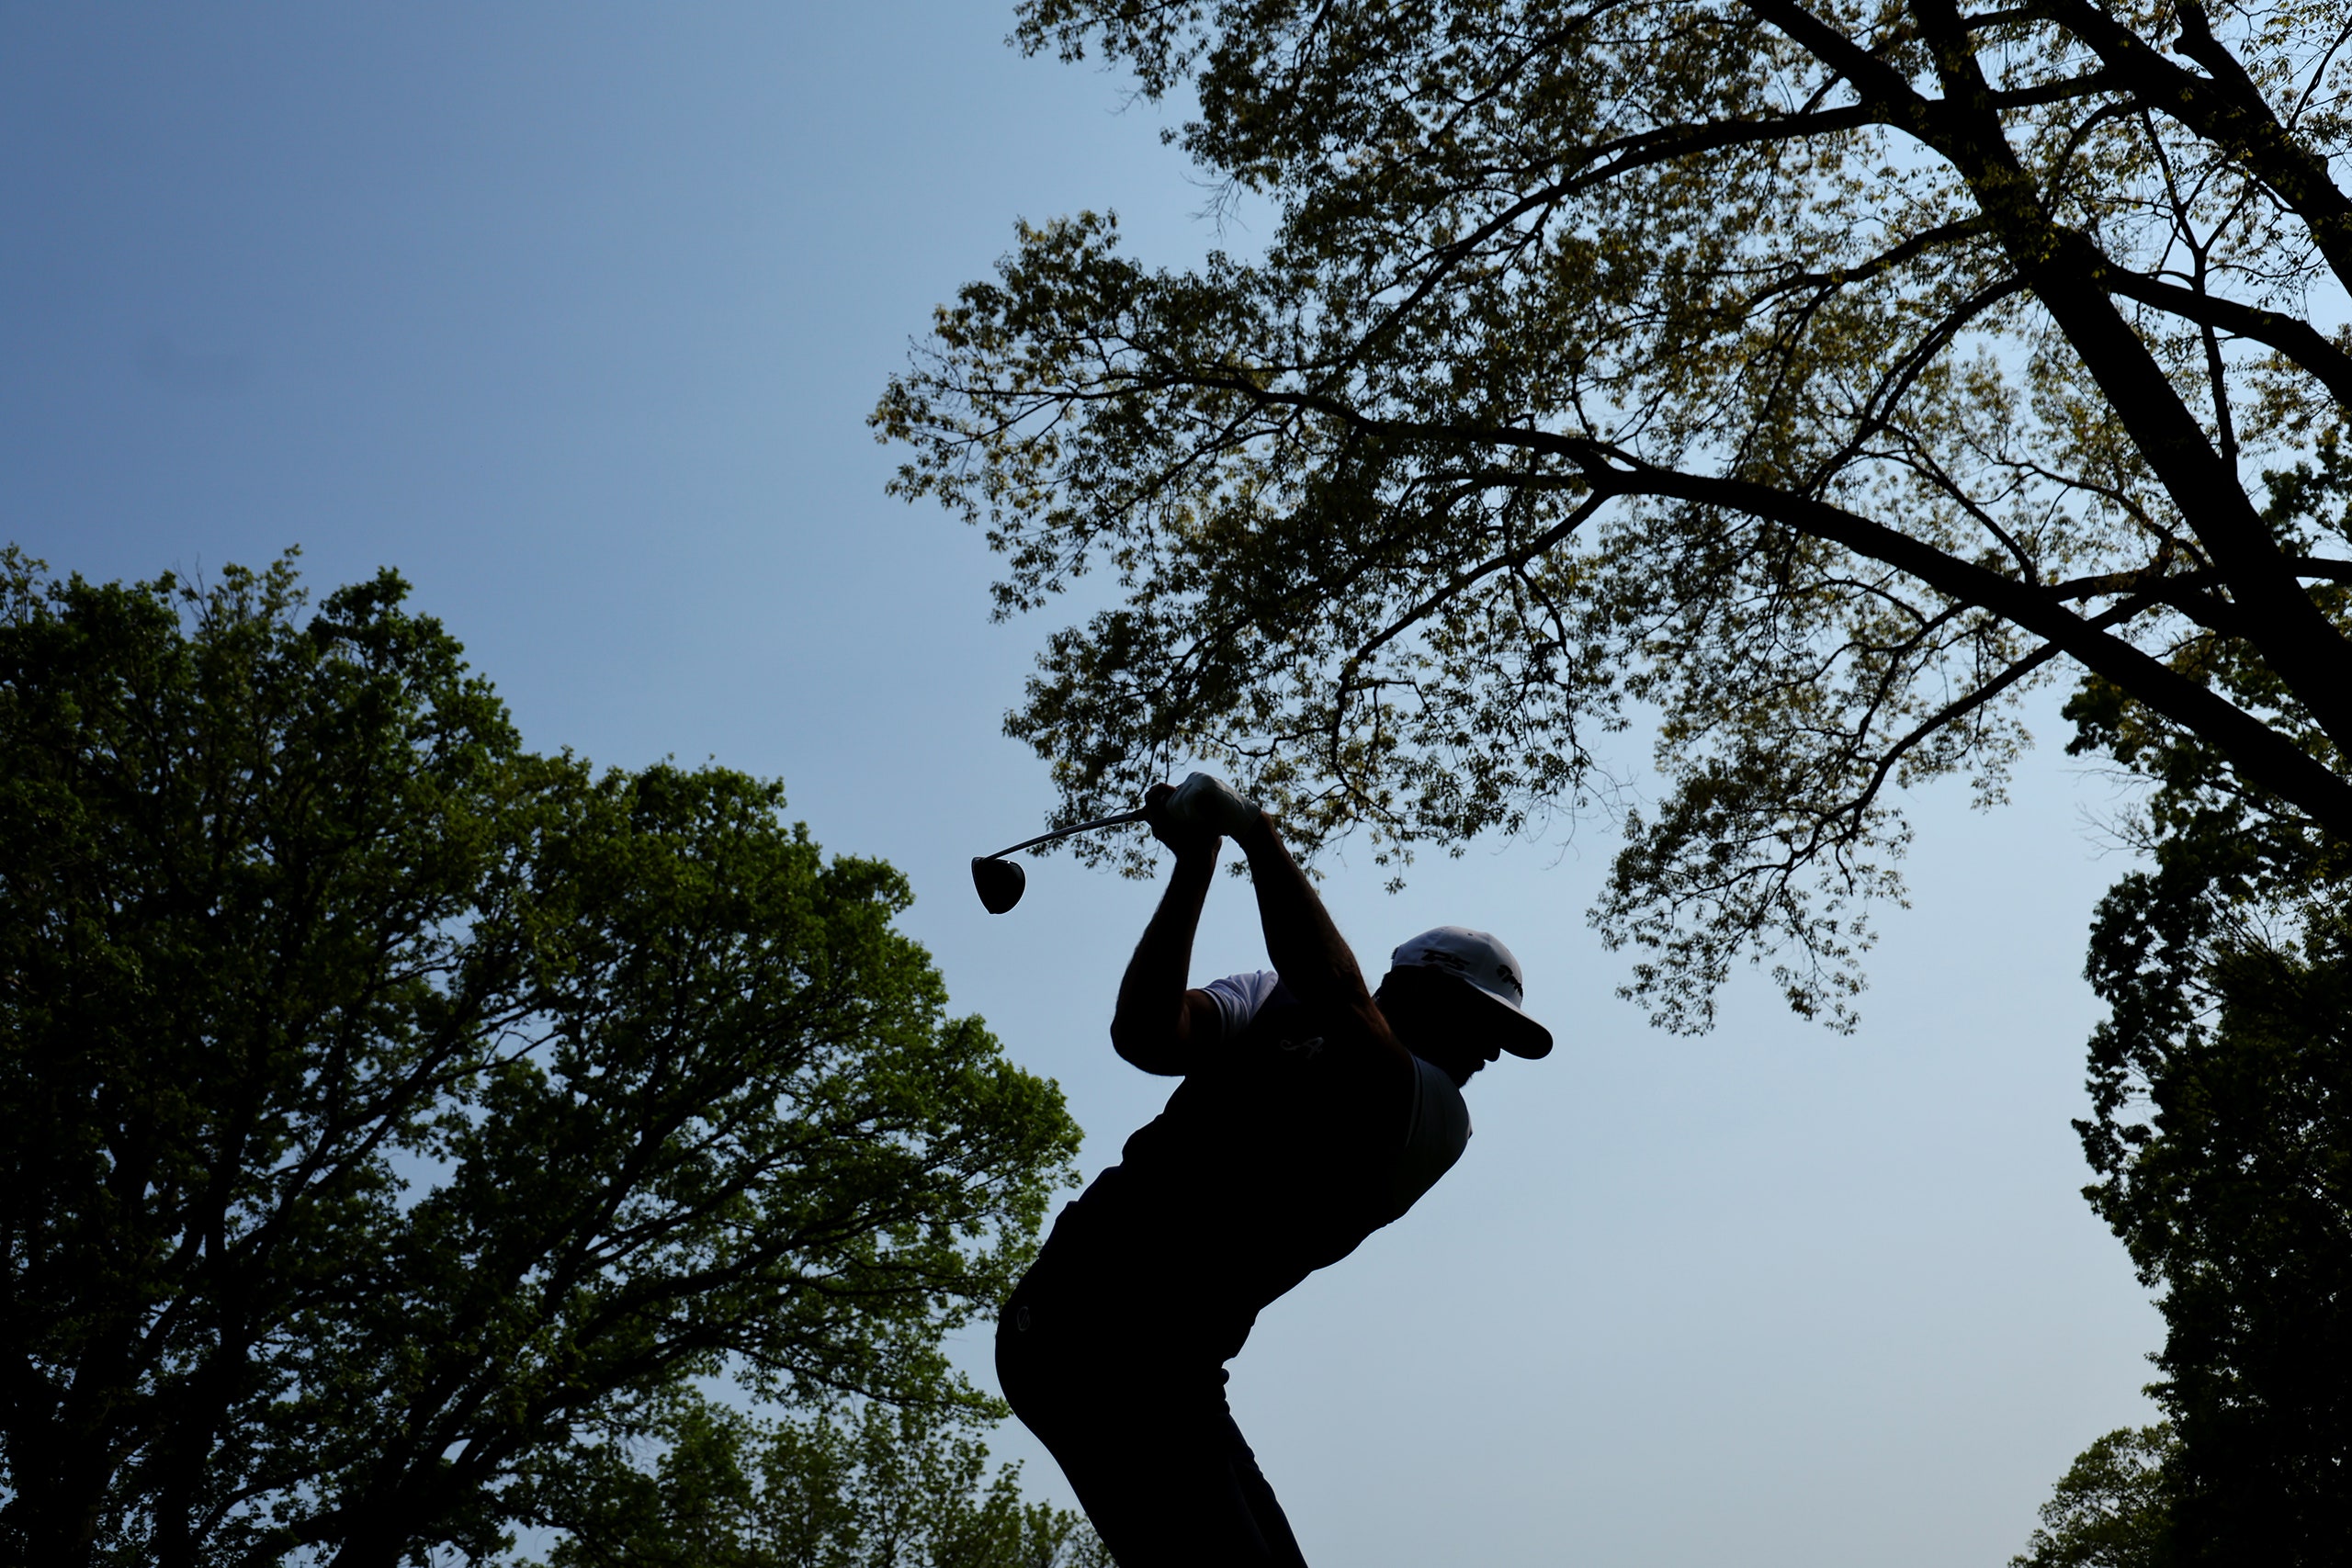 Dustin Johnson swings a golf club below trees